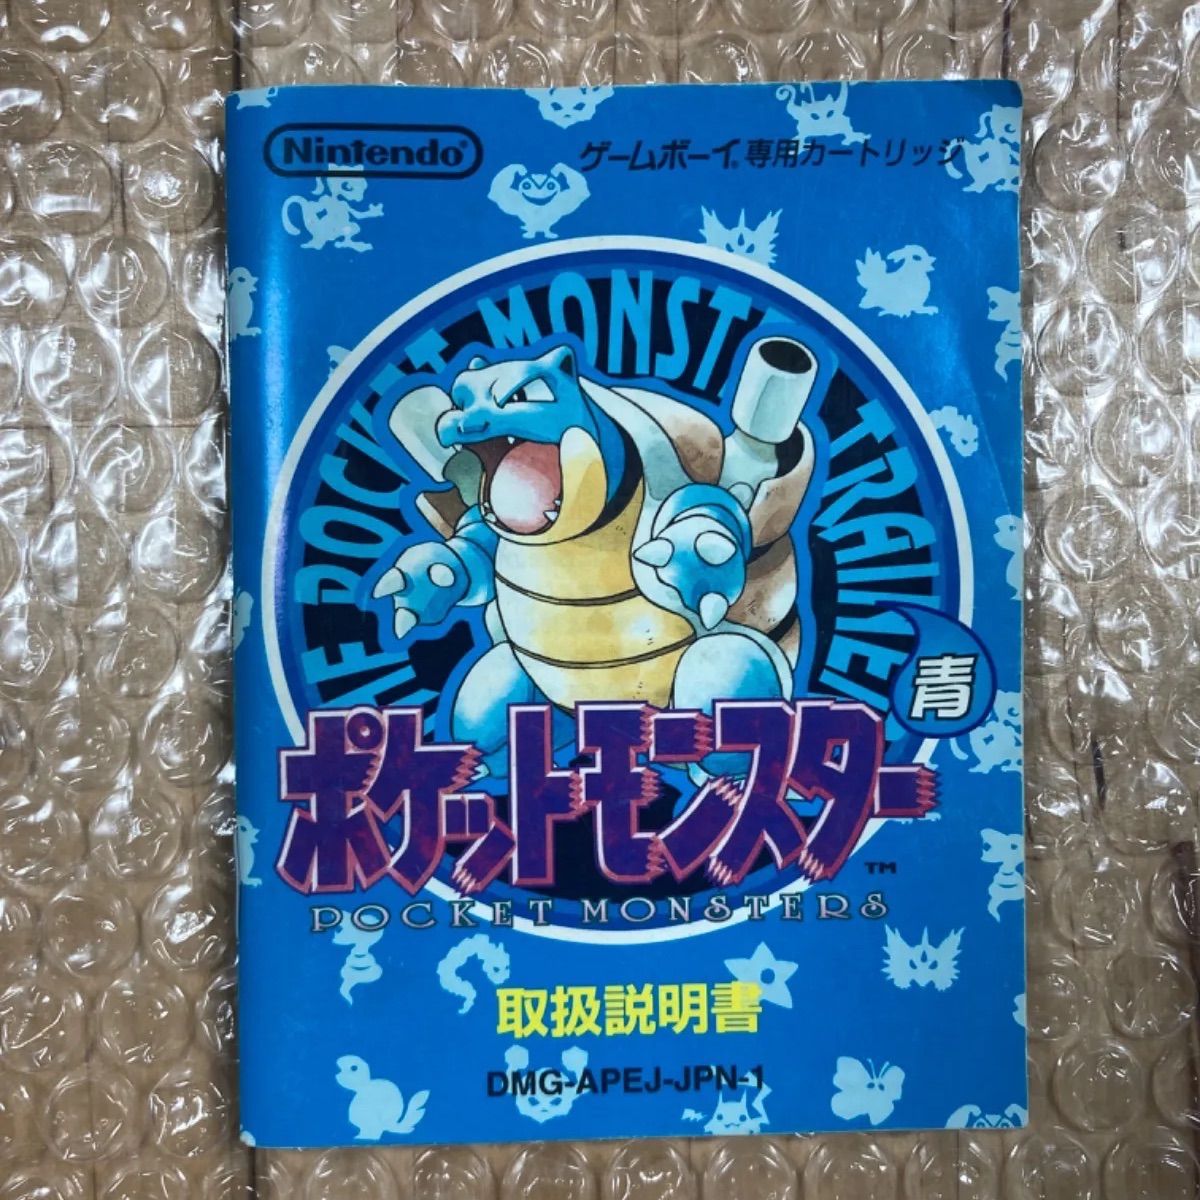 ポケットモンスター青 ゲームボーイ用ソフト 初代ポケモン - メルカリ